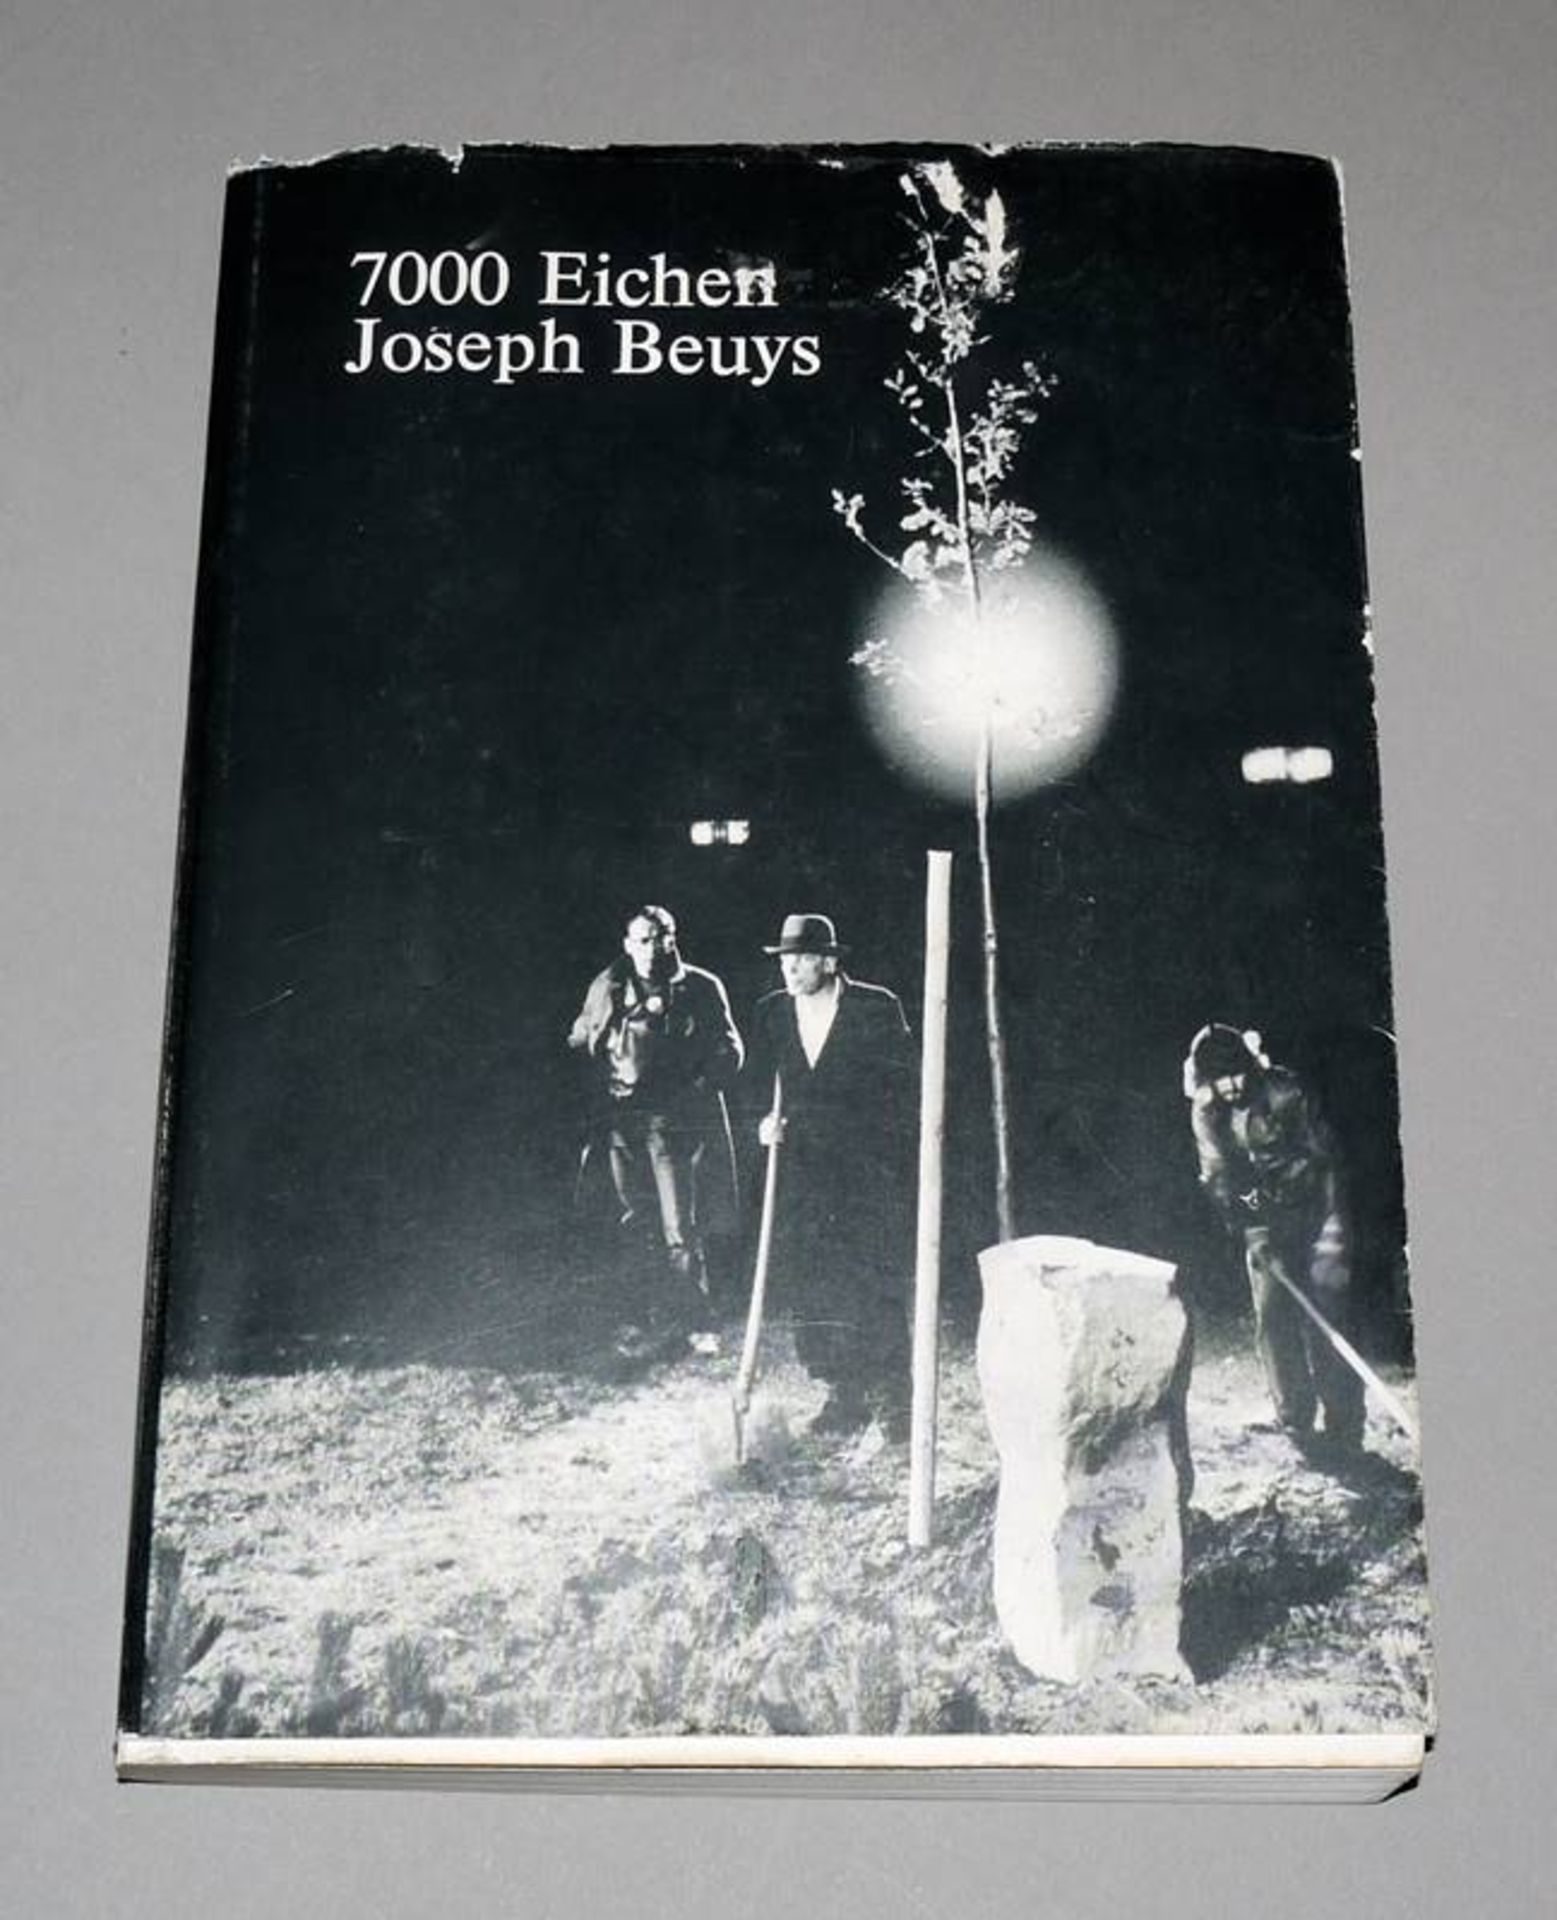 Joseph Beuys, "7000 Eichen" Katalog & div. Dokumente (originale Spendenbescheinigung für eine Eiche